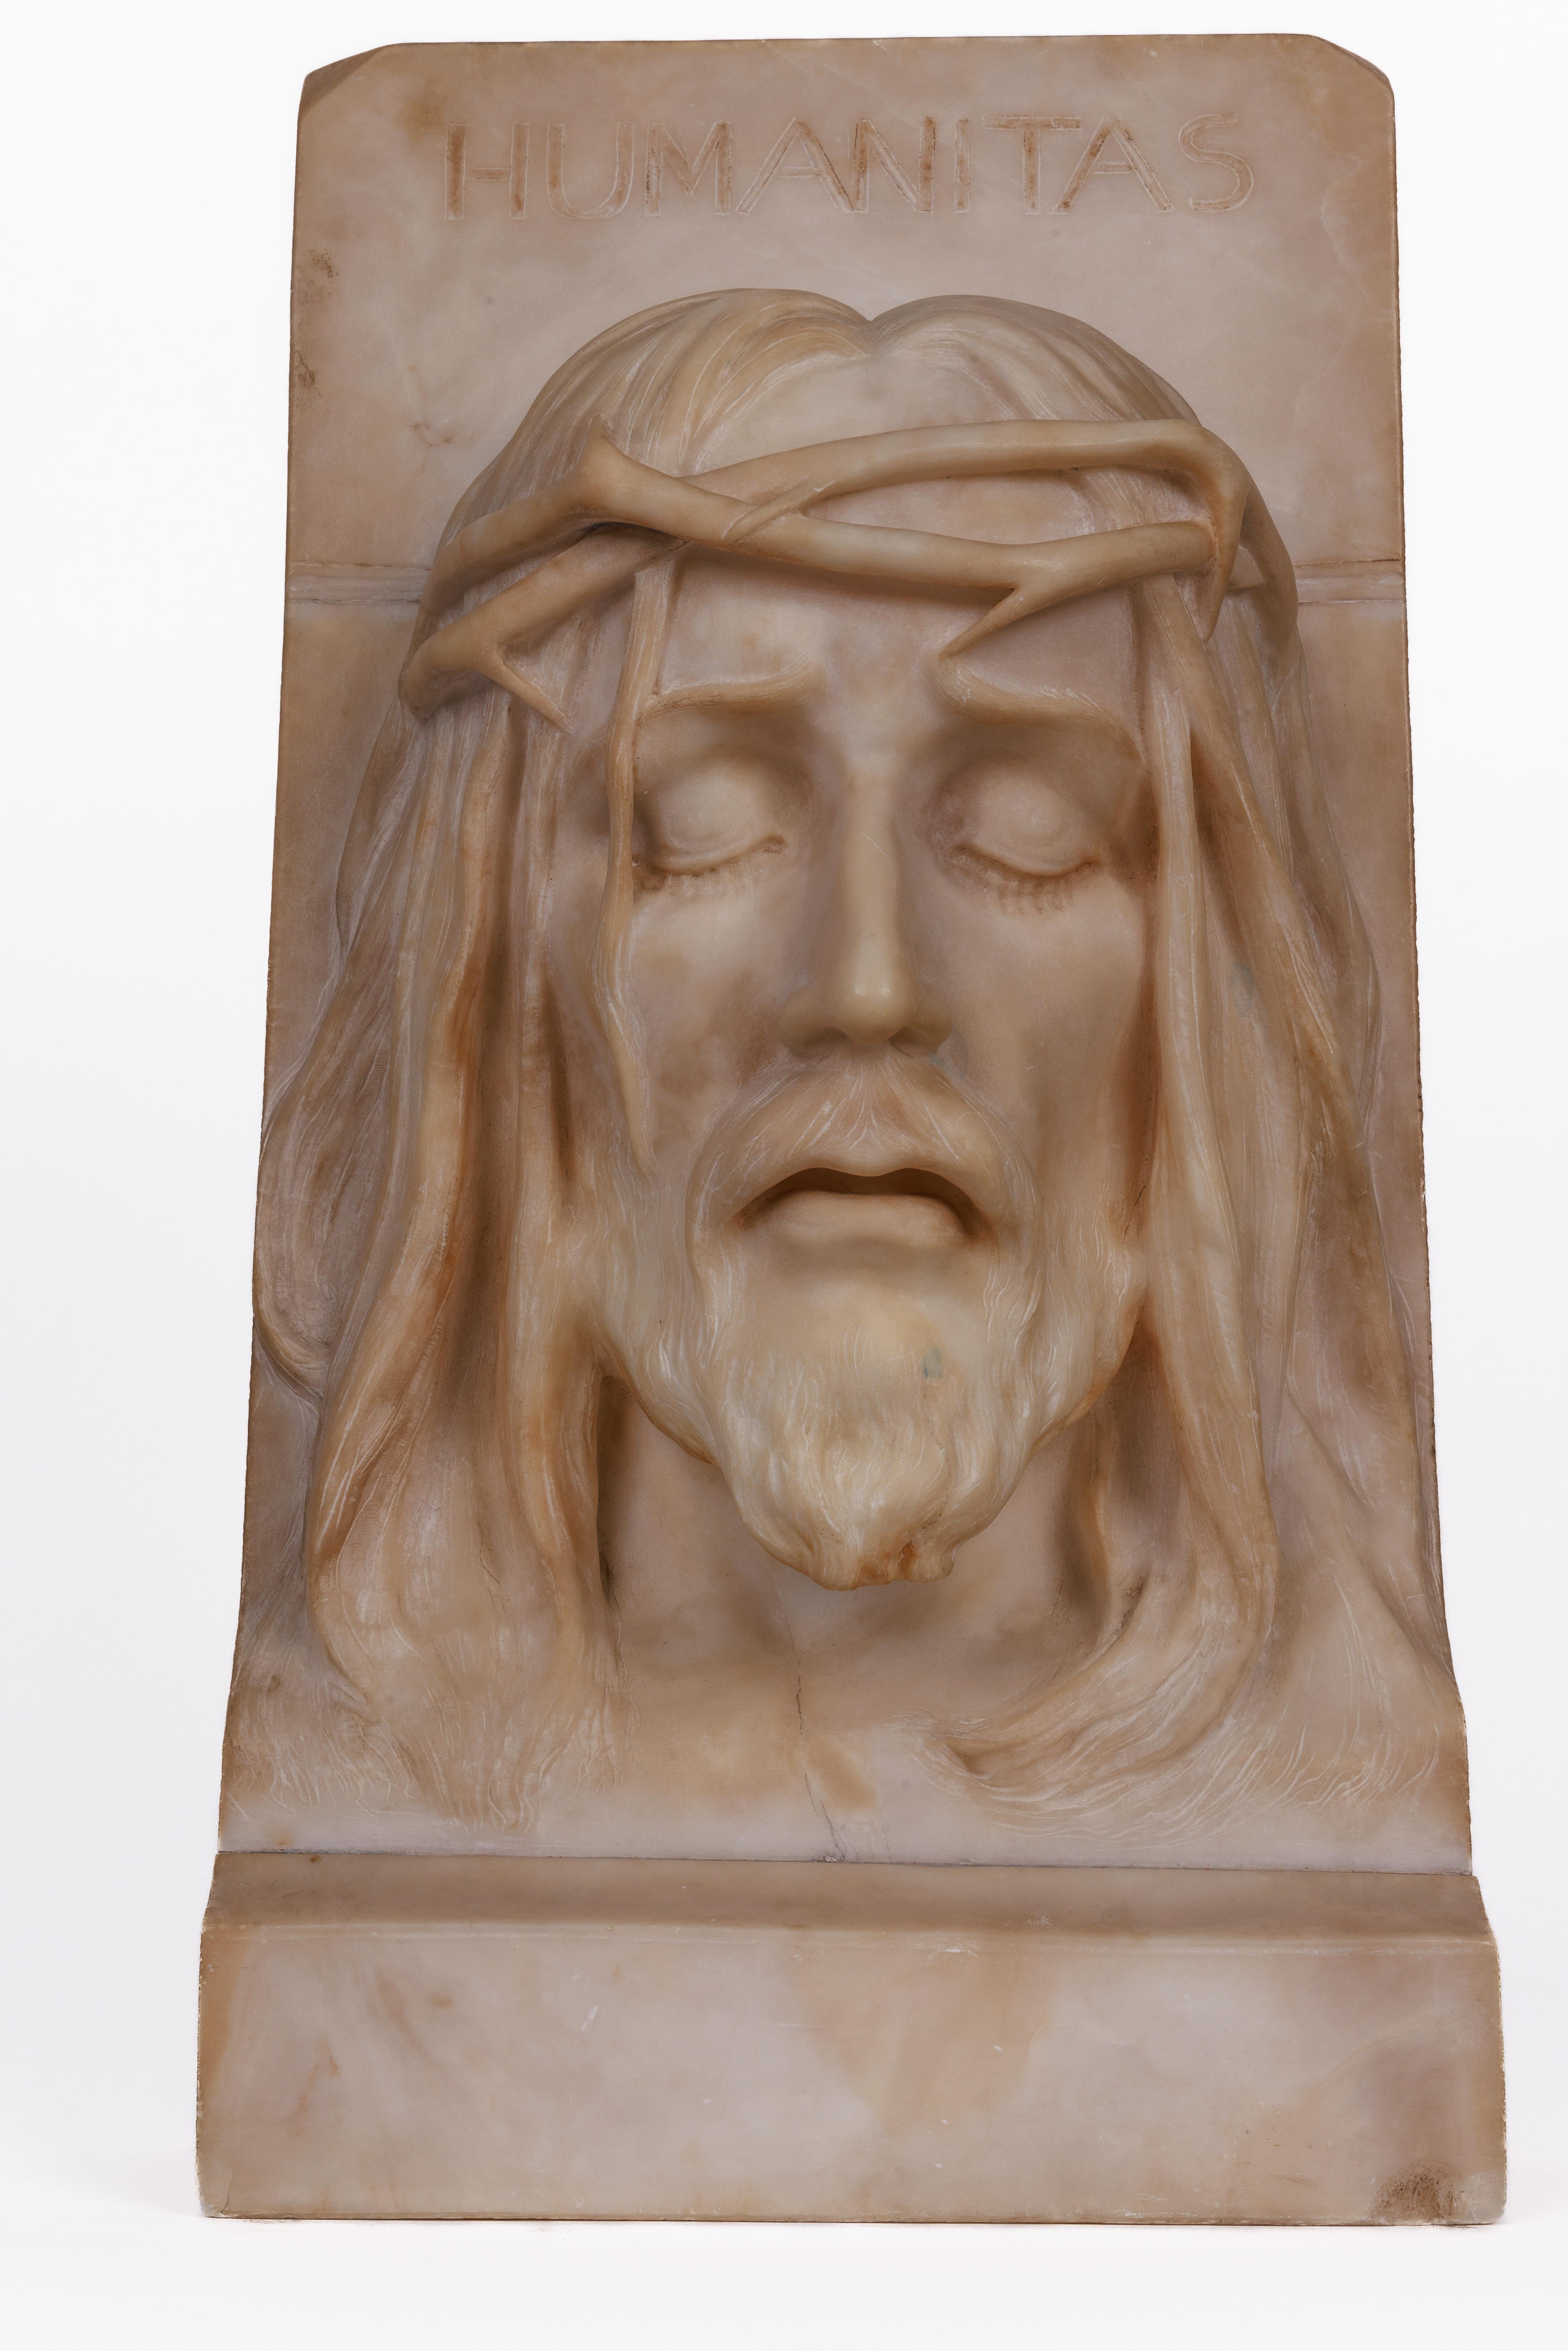 Rare et important buste en albâtre italien représentant Jésus Christ, C.C. 1860

Buste modelé du Saint Christ portant une couronne d'épines, sculpté à la main de manière exceptionnelle et réaliste à Rome vers 1860 et portant l'inscription